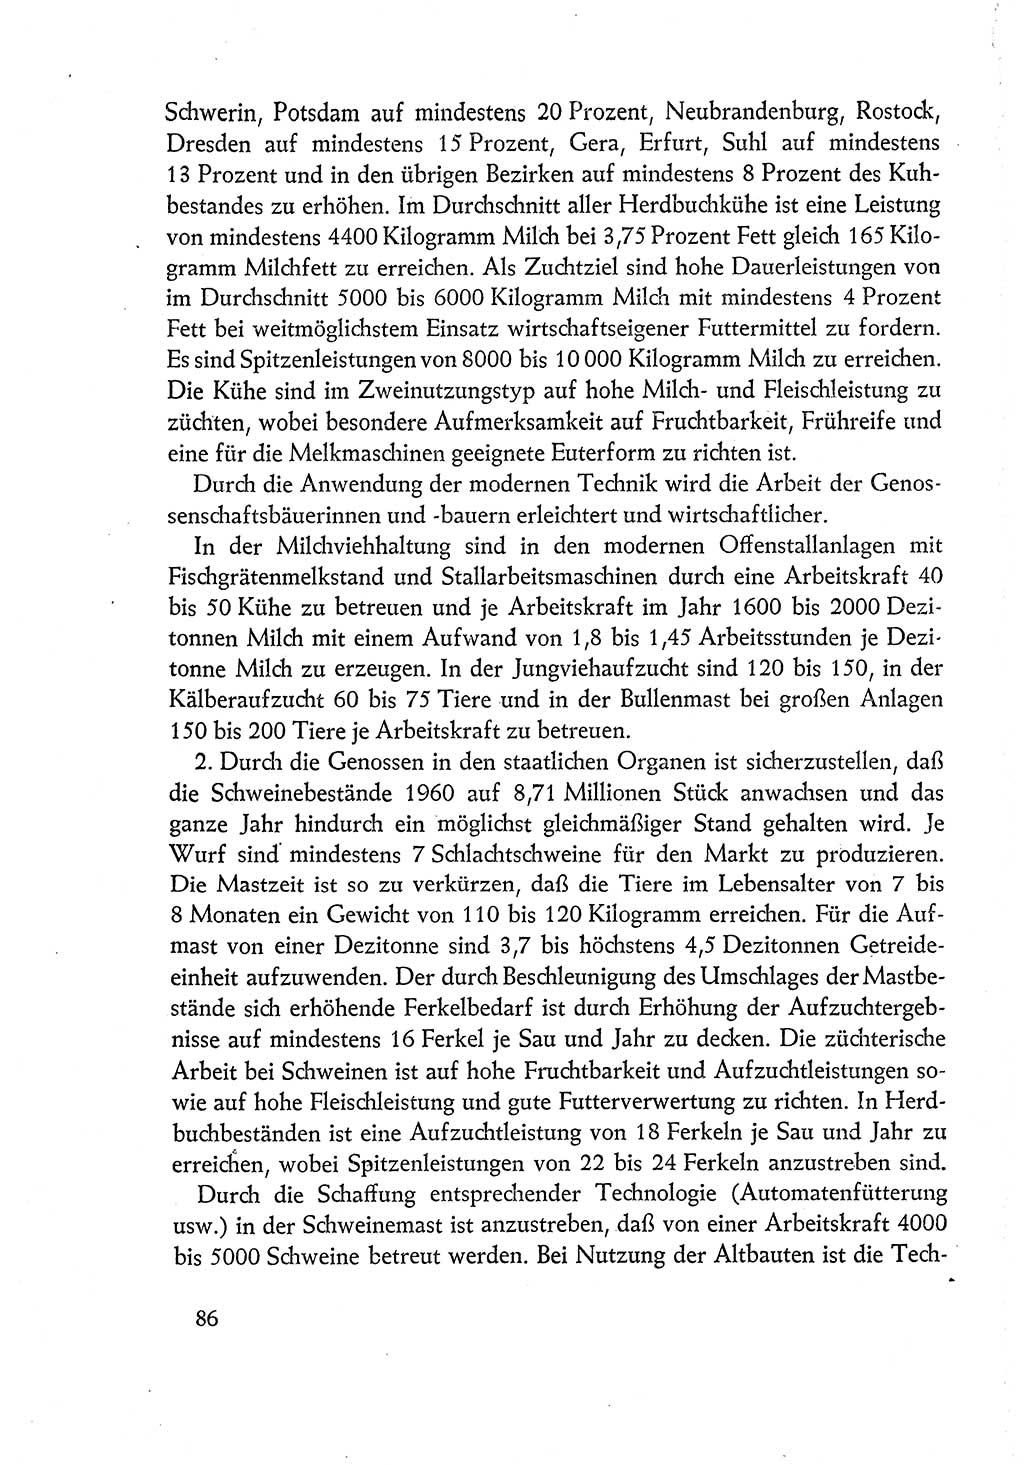 Dokumente der Sozialistischen Einheitspartei Deutschlands (SED) [Deutsche Demokratische Republik (DDR)] 1960-1961, Seite 86 (Dok. SED DDR 1960-1961, S. 86)